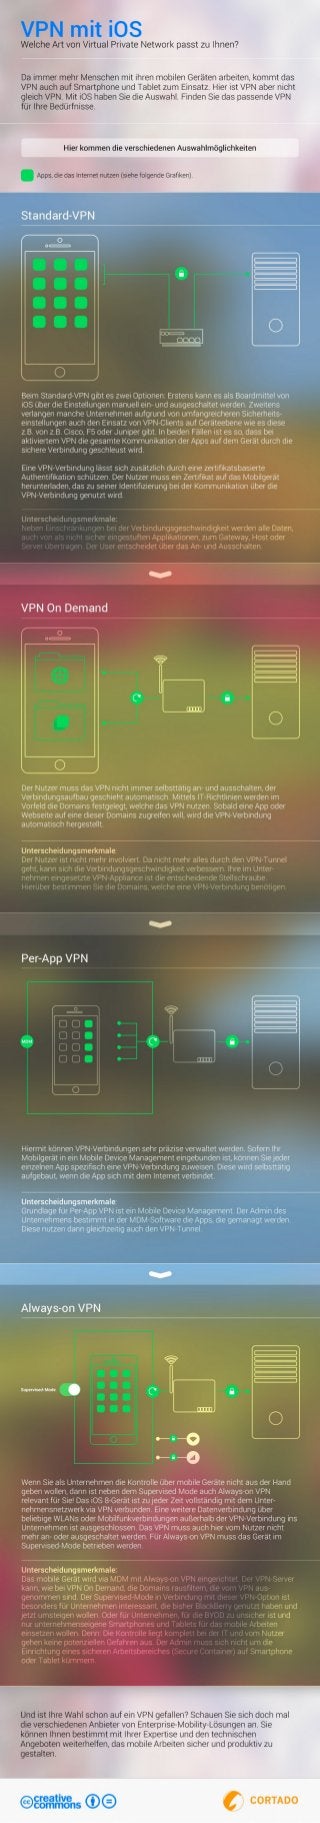 VPN mit iOS - Welche Art von Virtual Private Network passt zu Ihnen?